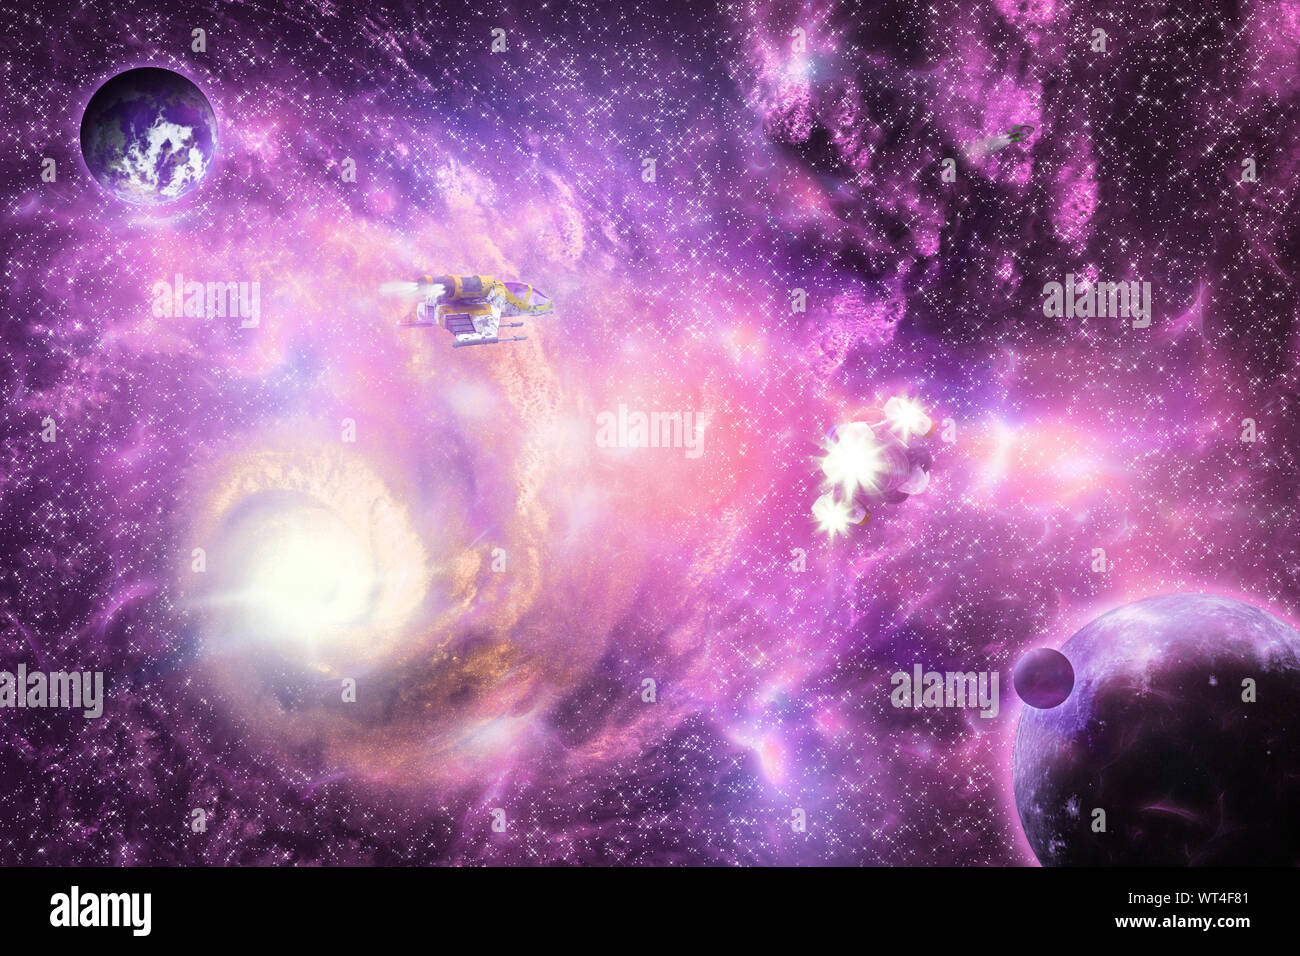 Illustration de l'espace galaxy de couleurs vives avec les planètes et les vaisseaux spatiaux. Banque D'Images